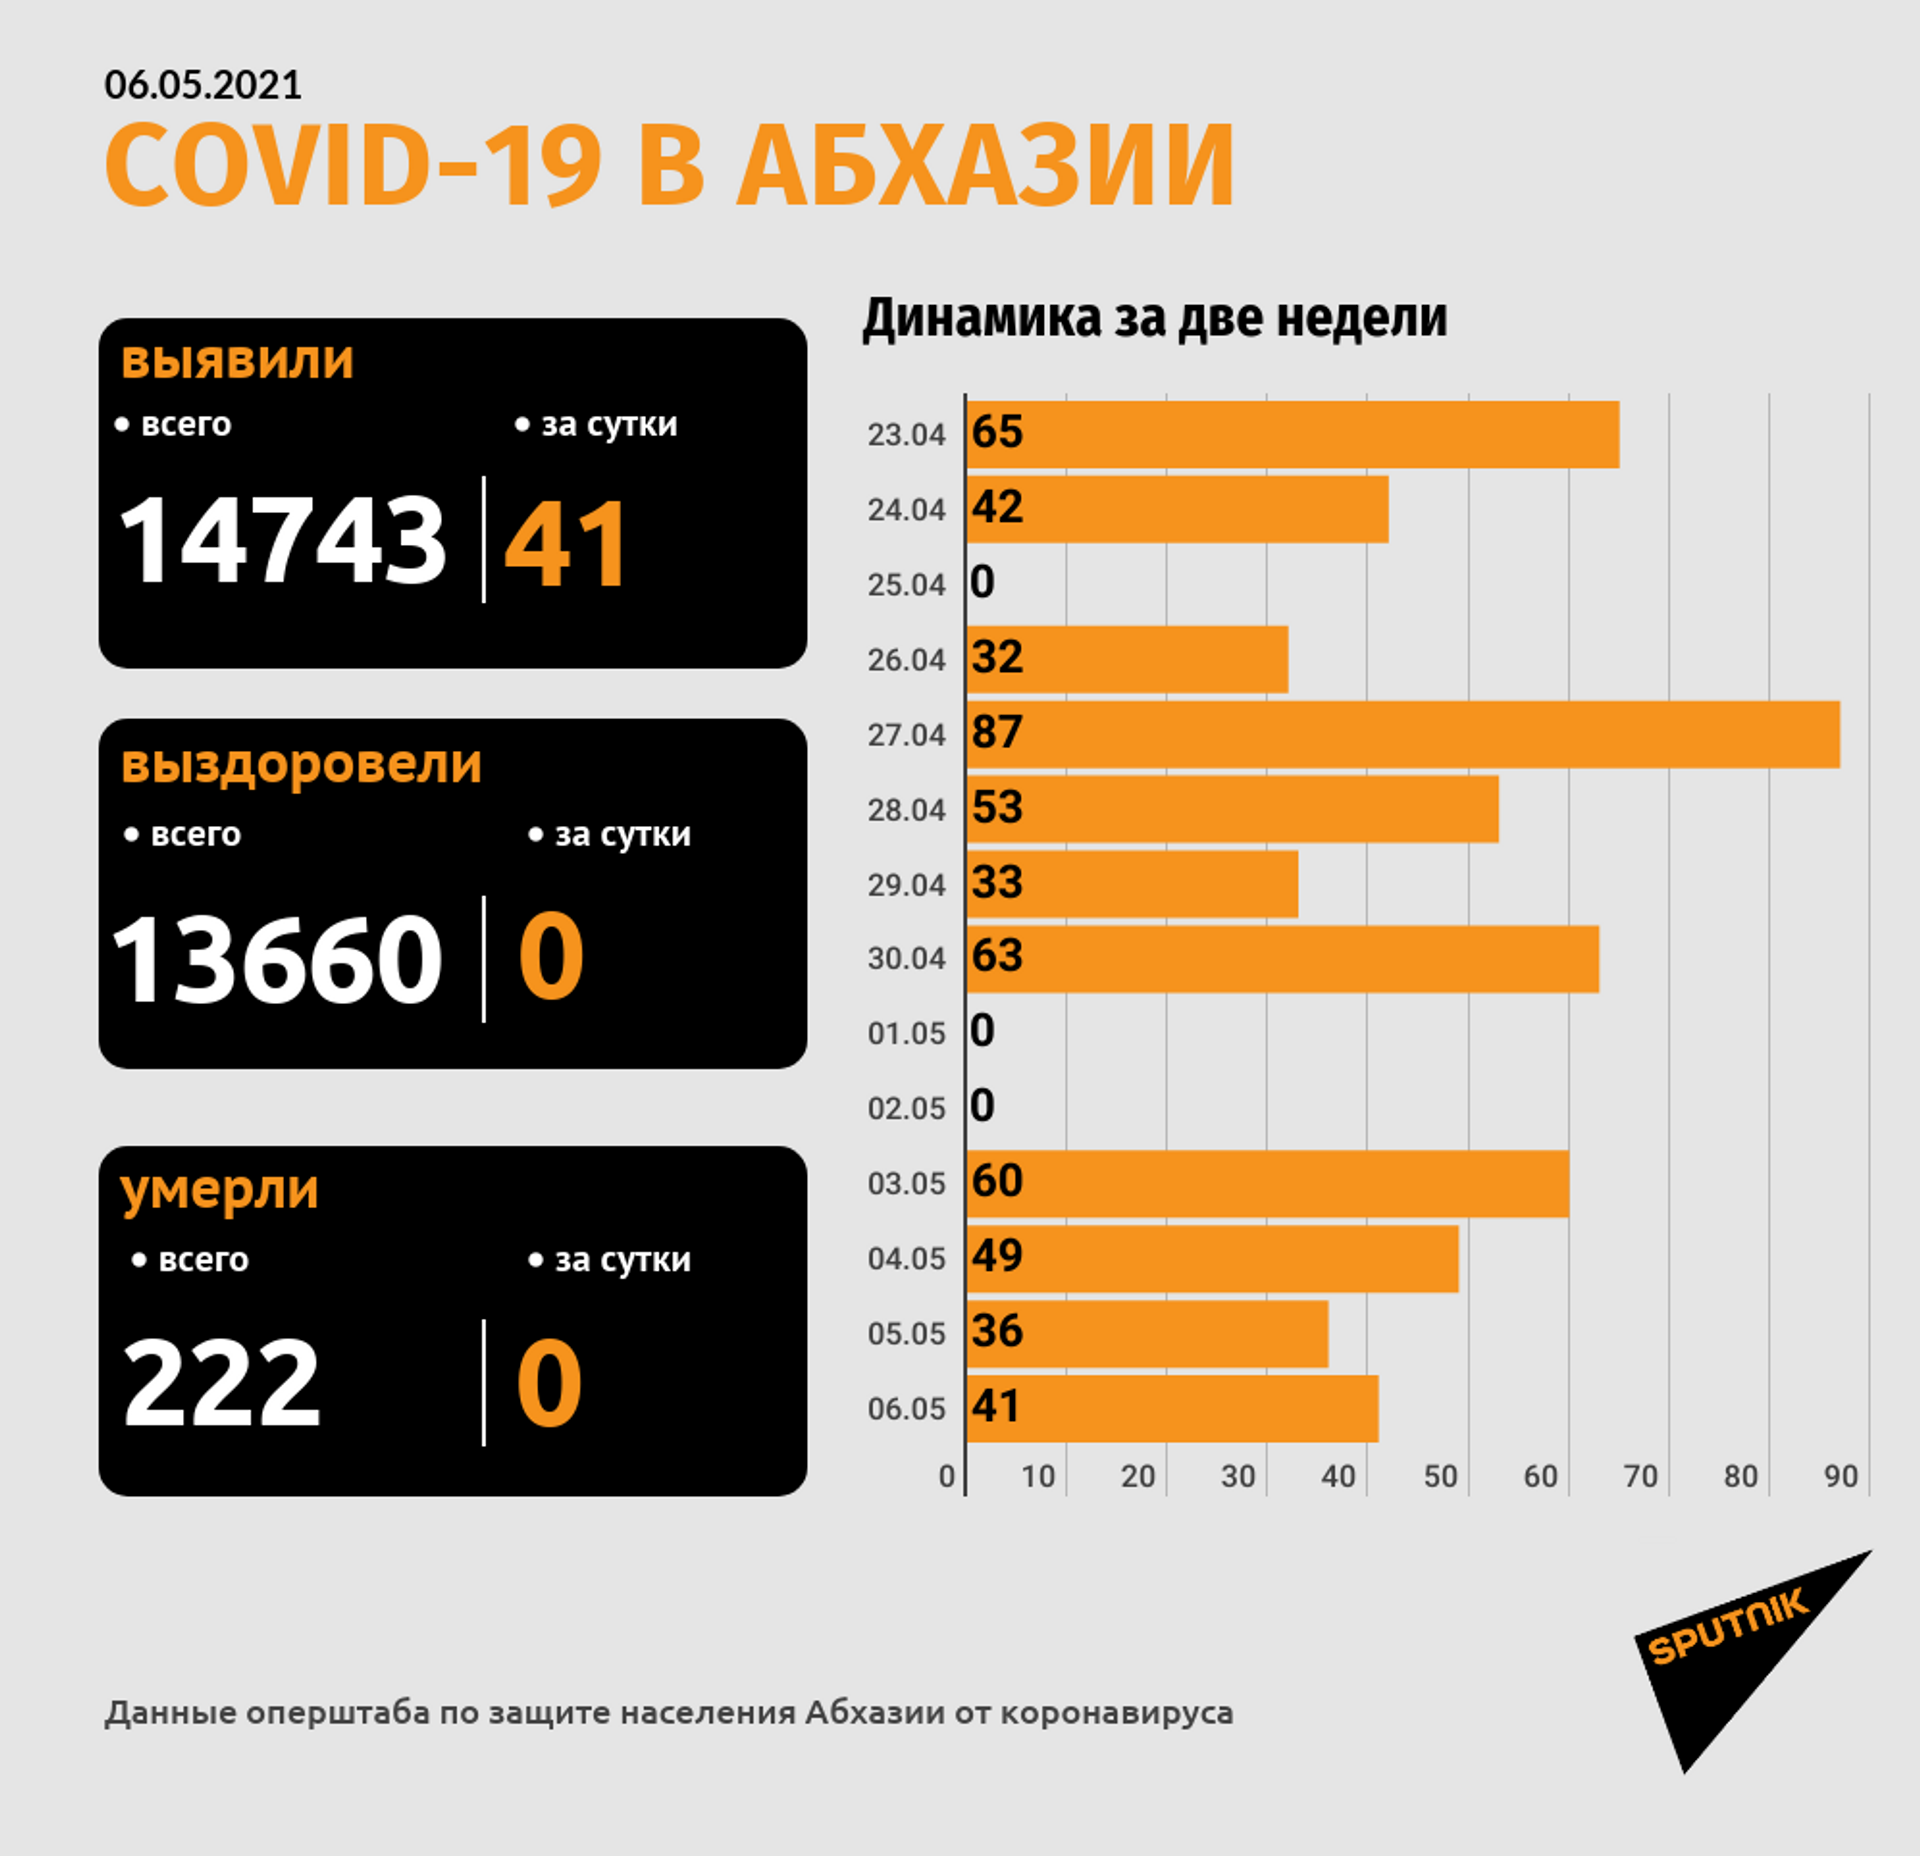 Еще 41 случай COVID-19 зафиксирован в Абхазии за сутки - Sputnik Абхазия, 1920, 06.05.2021